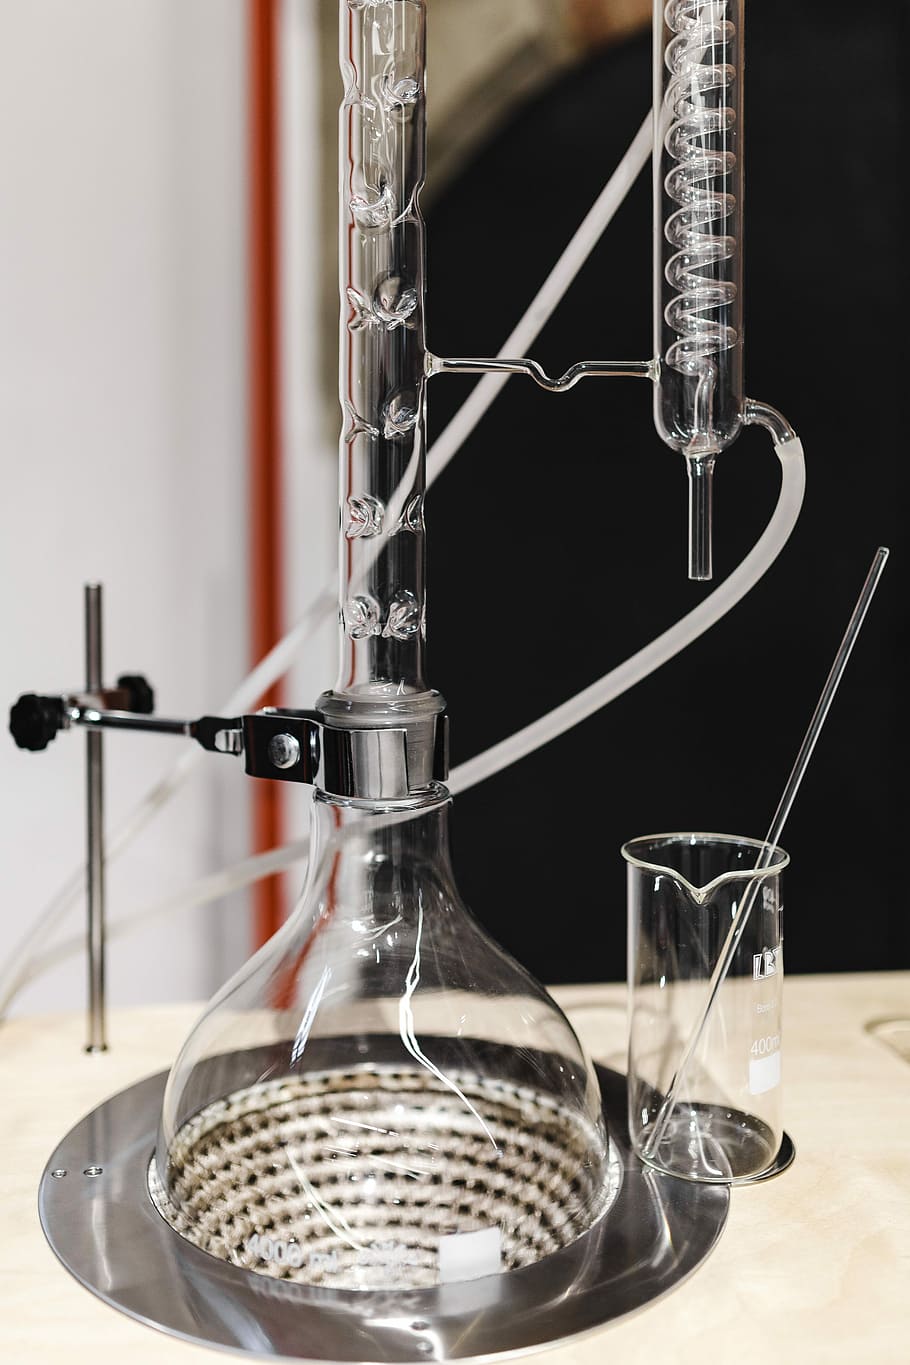 equipo de destilación de vidrio, vidrio, destilación, equipo, experimento, química, reacción, aparato, ciencia, químico